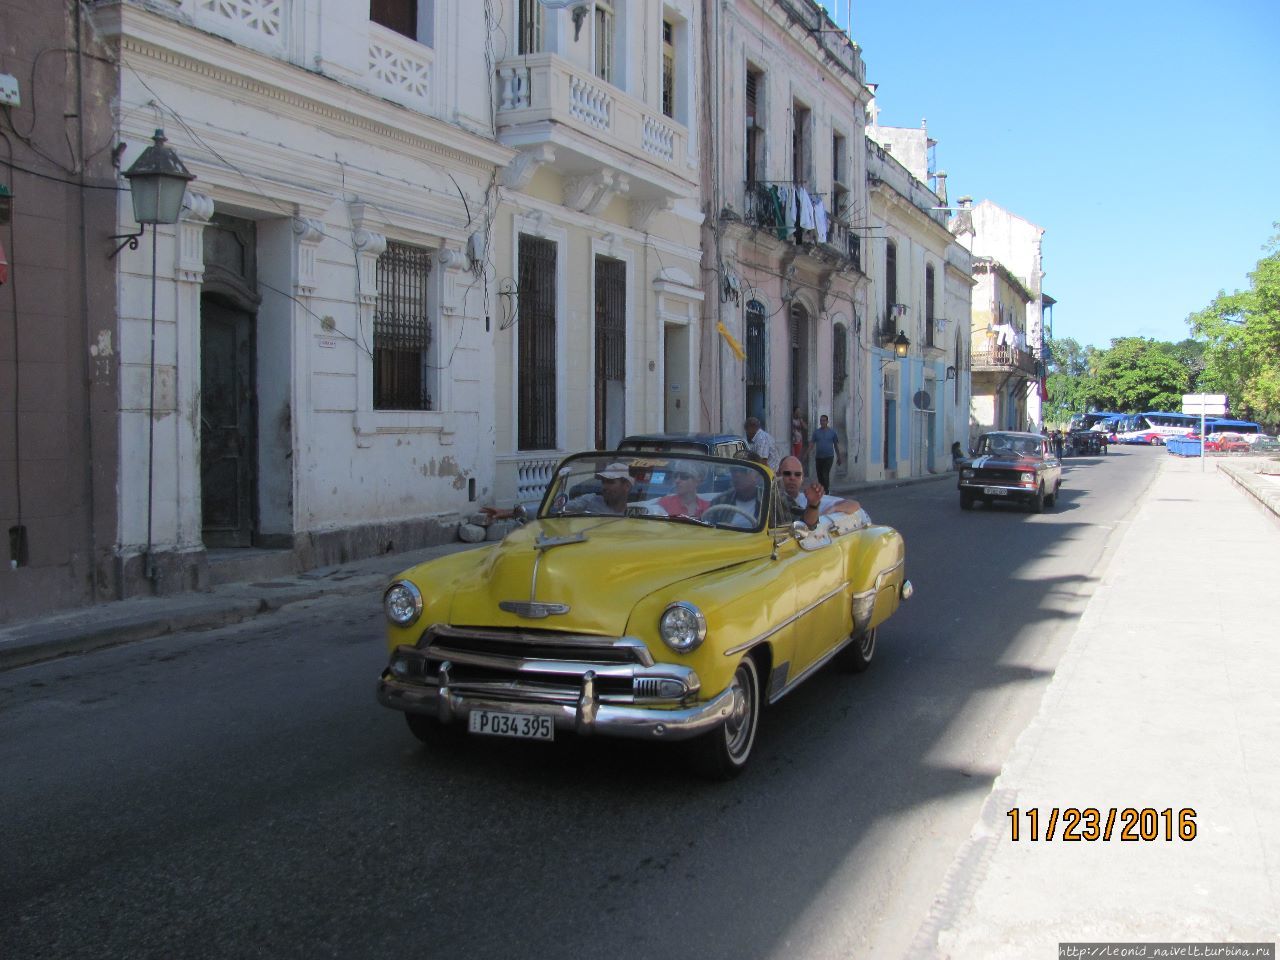 Гавана. Куба. О житье-бытье, еде-питье, культур-мультуре Ч1 Гавана, Куба